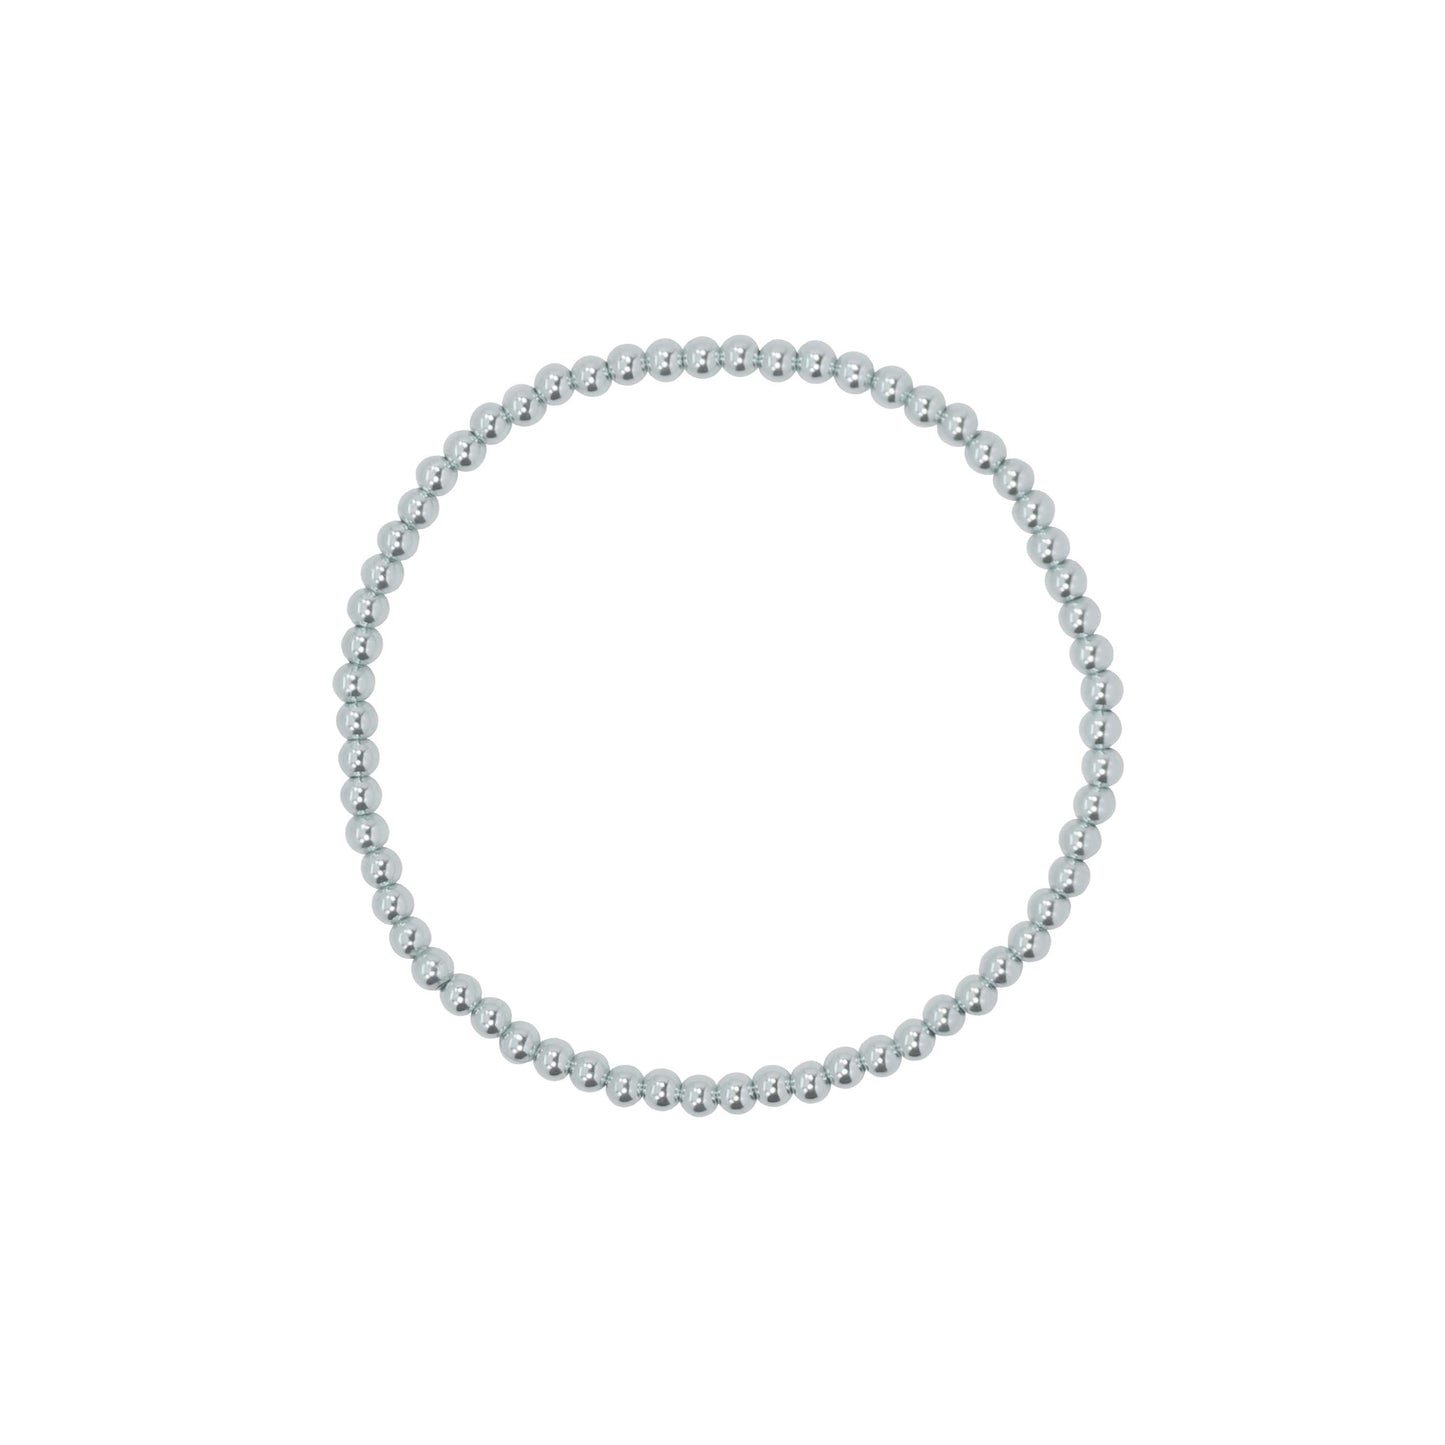 Stretchy Kindness Adult Bracelet (3MM beads)